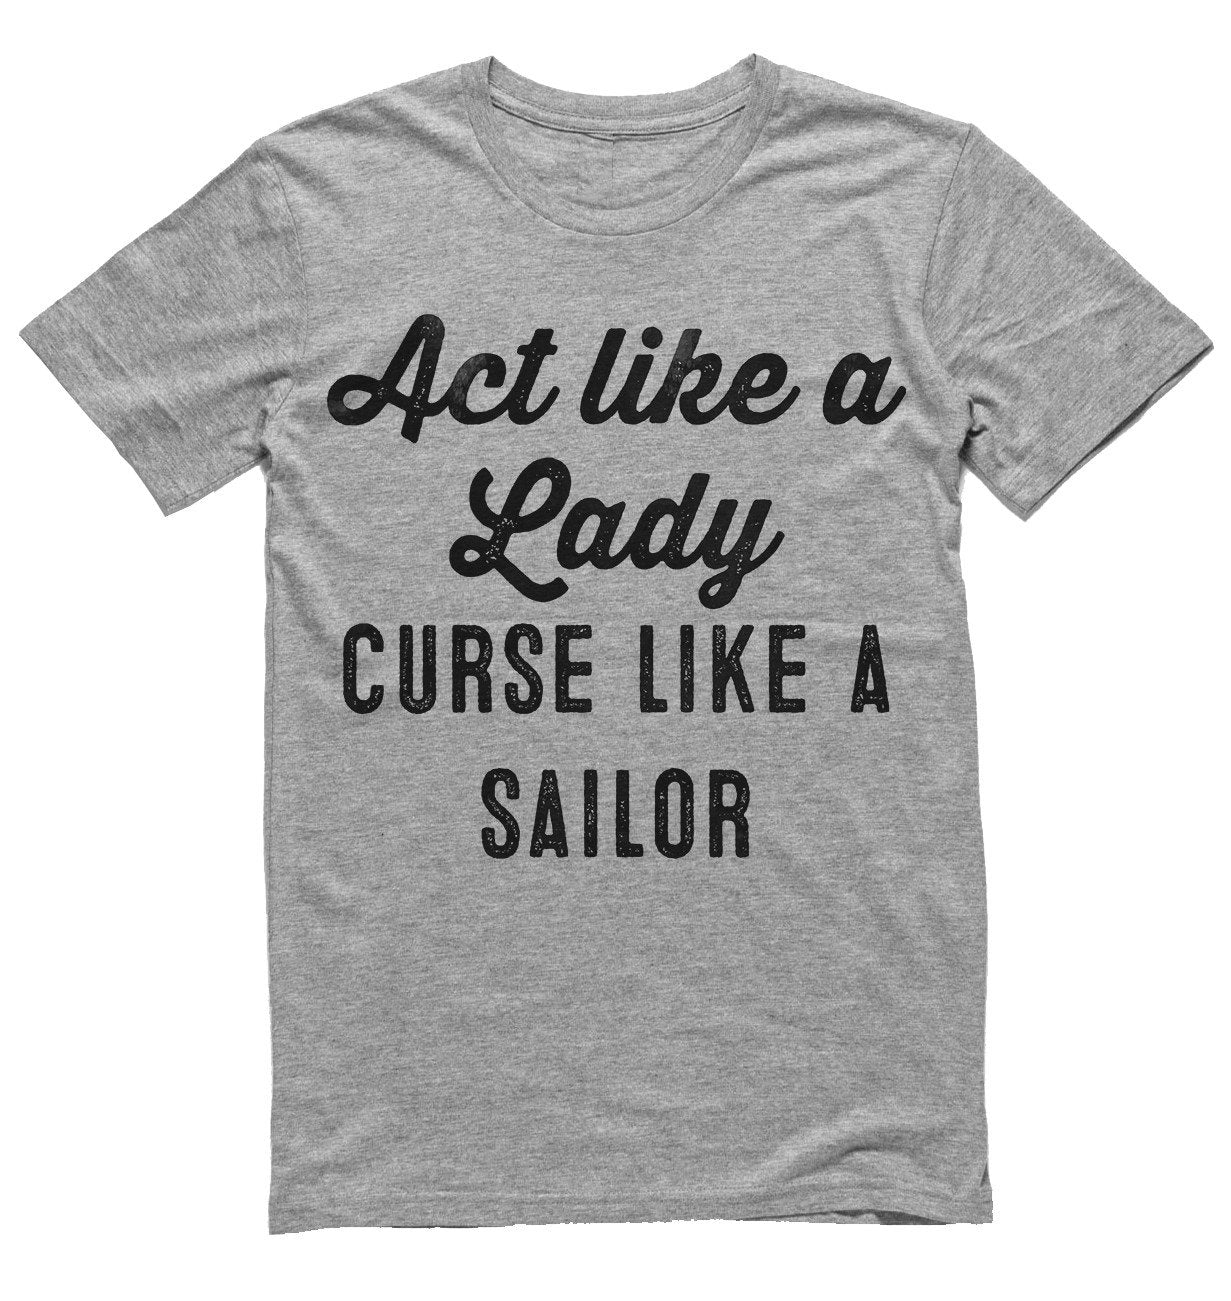 Act like a Lady curse like a sailor t-shirt - Shirtoopia